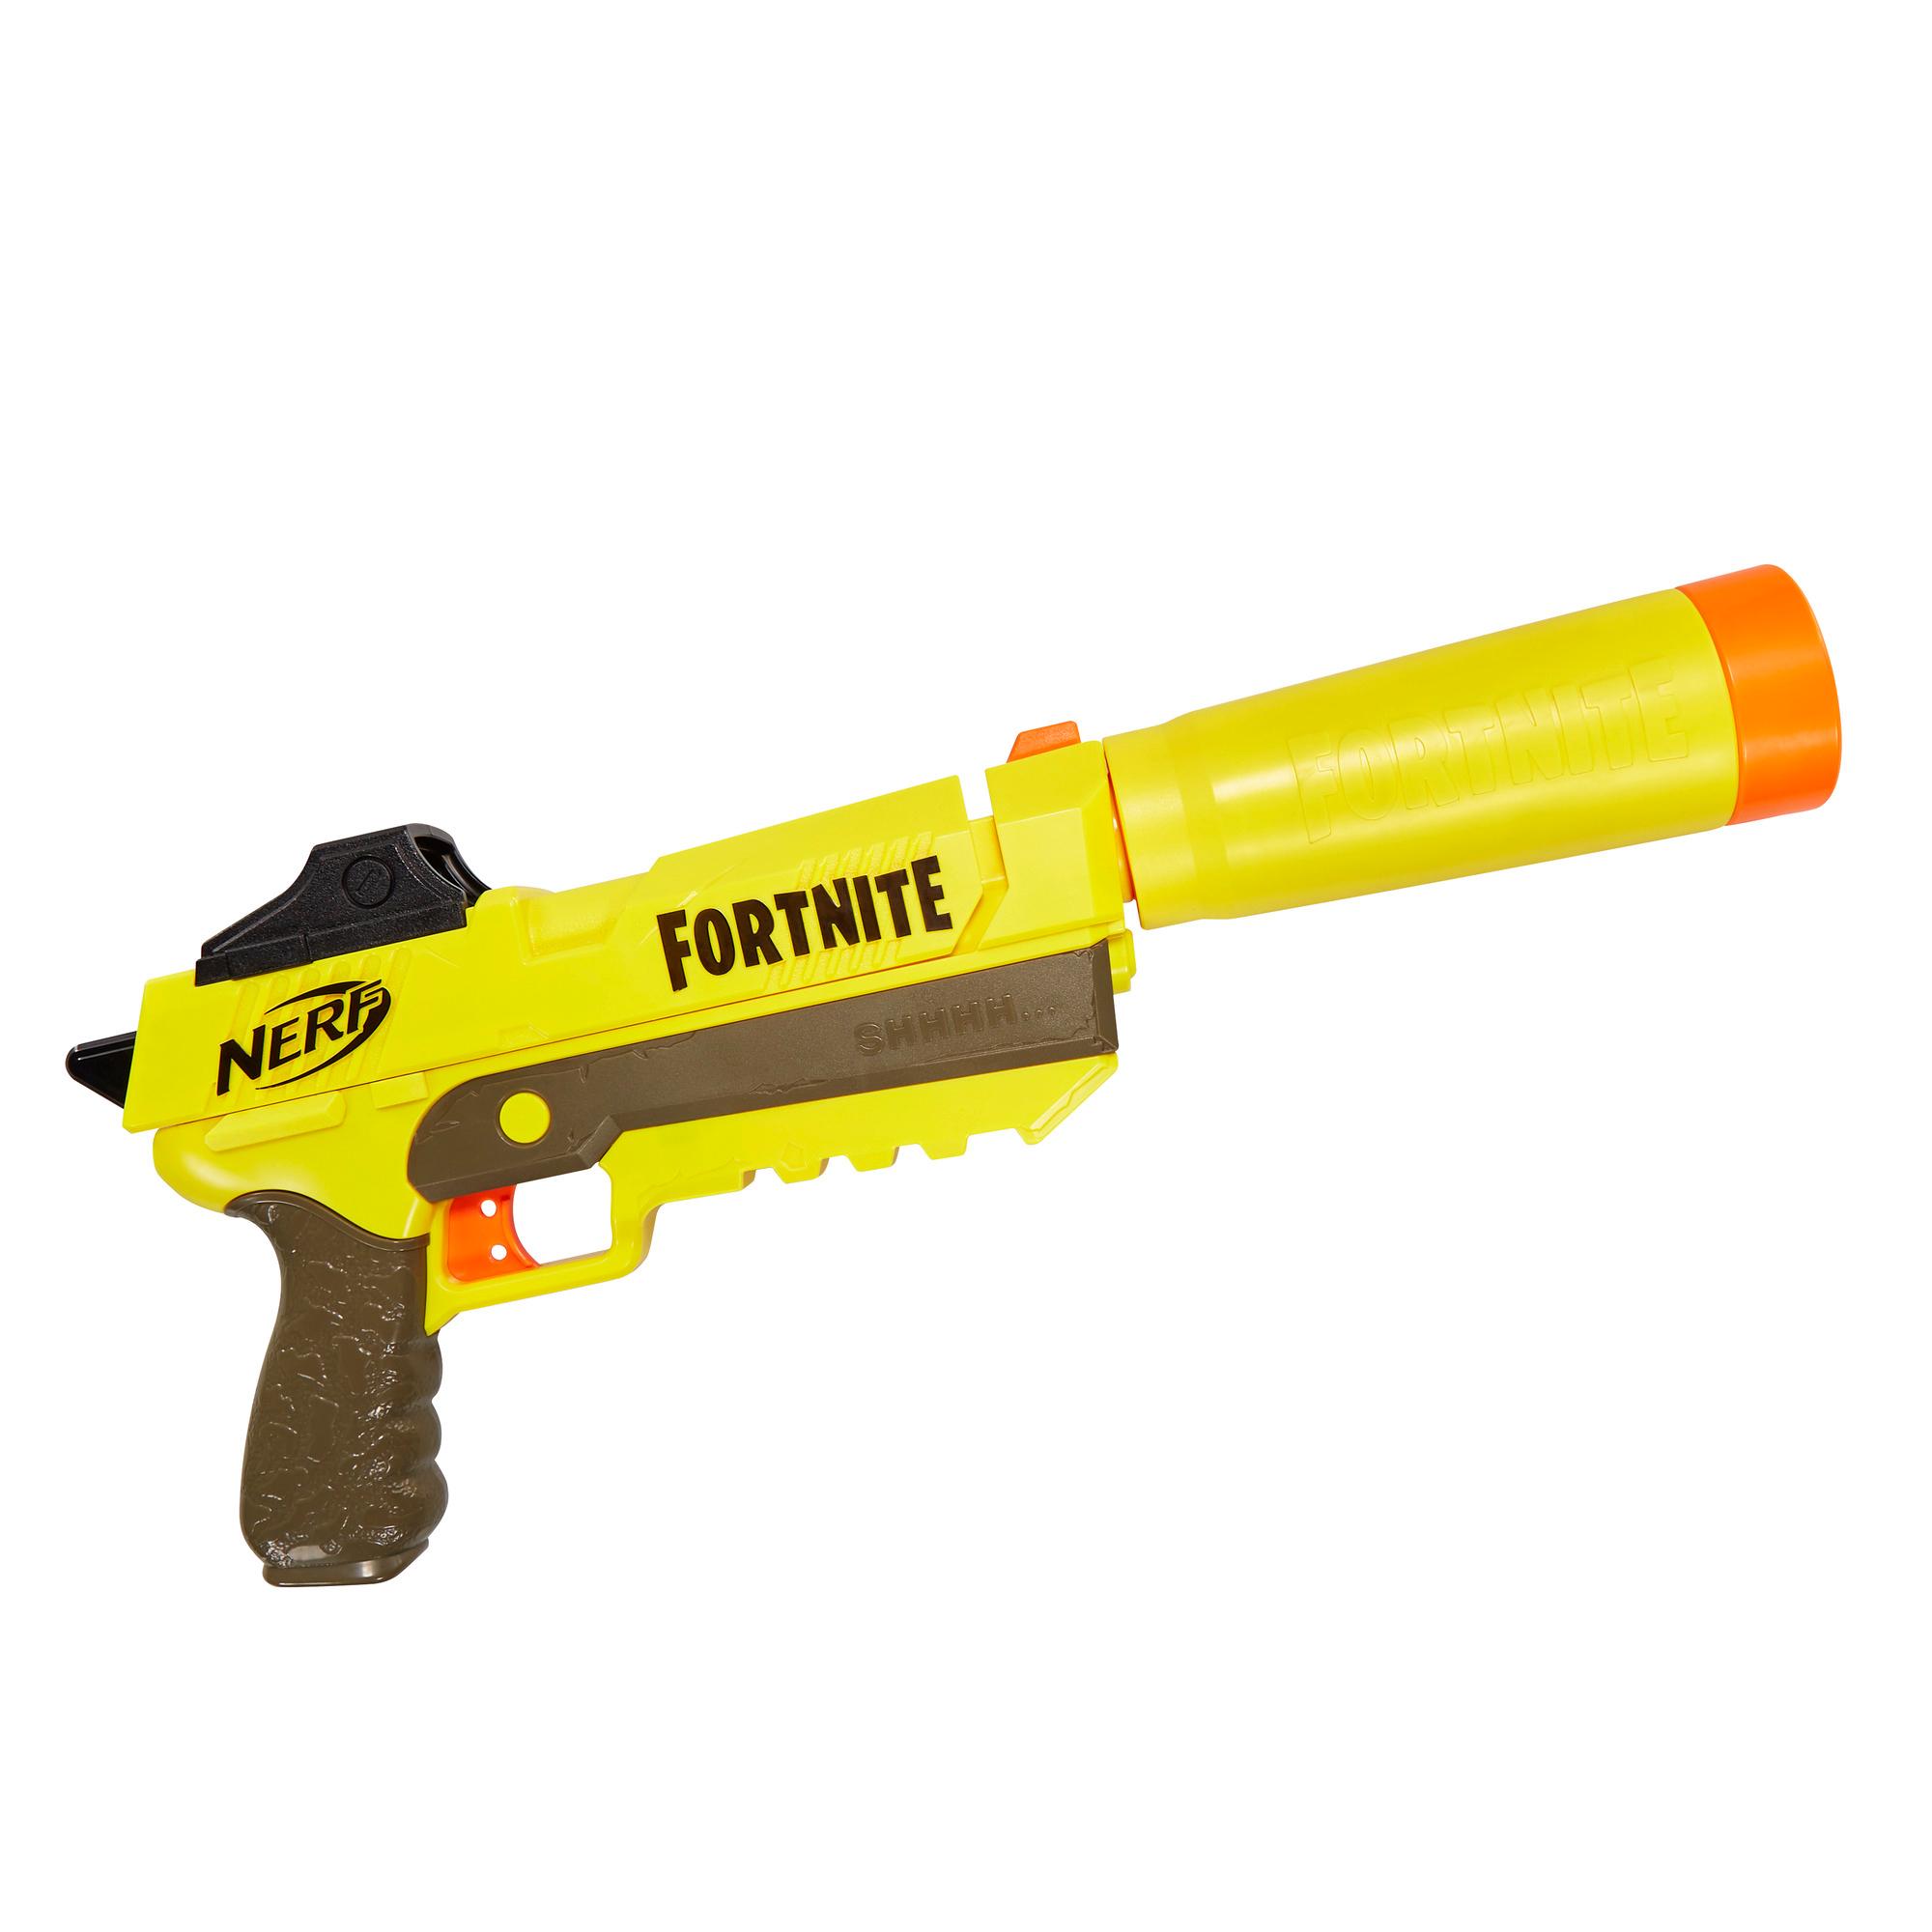 Fortnite Soilder Nerf Nerf Fortnite Sp L Nerf Elite Dart Blaster